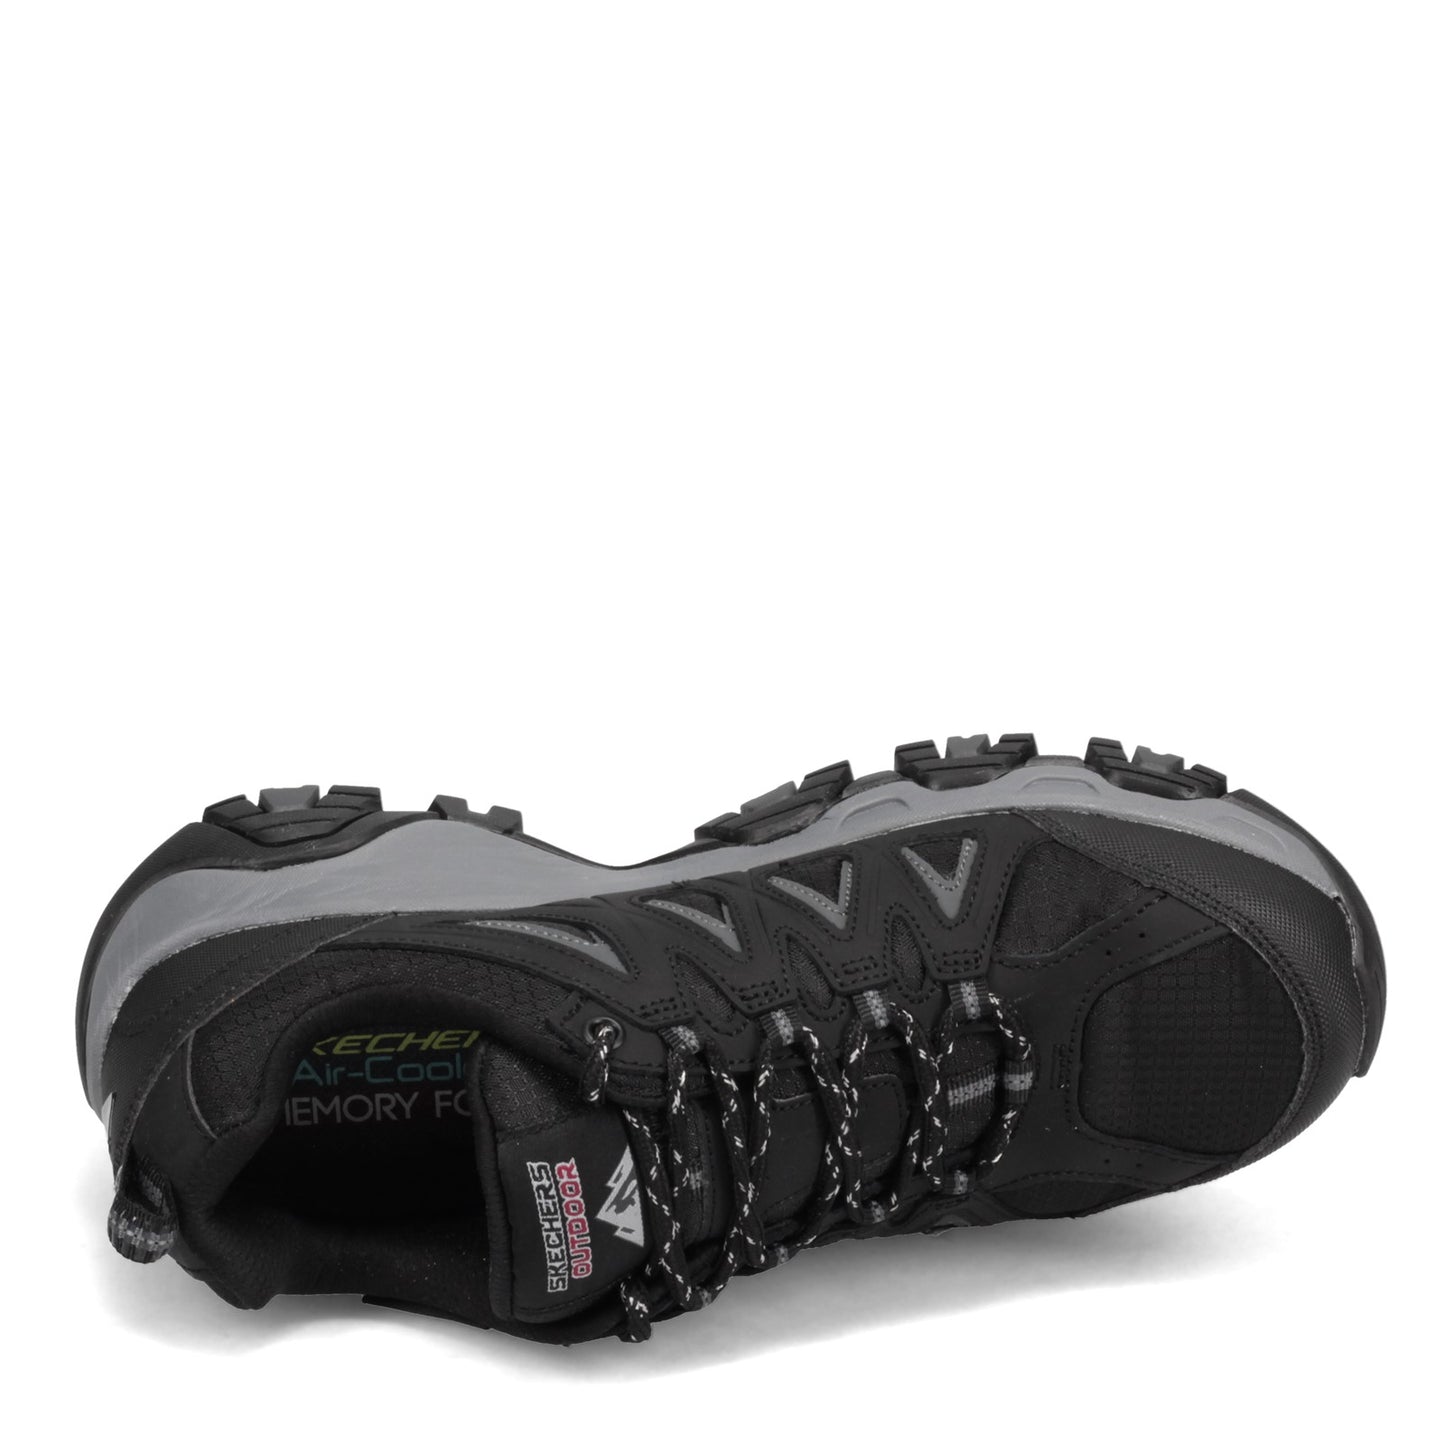 Peltz Shoes  Men's Skechers Terrabite Hiking Shoe Black/Charcoal 51844-BKCC